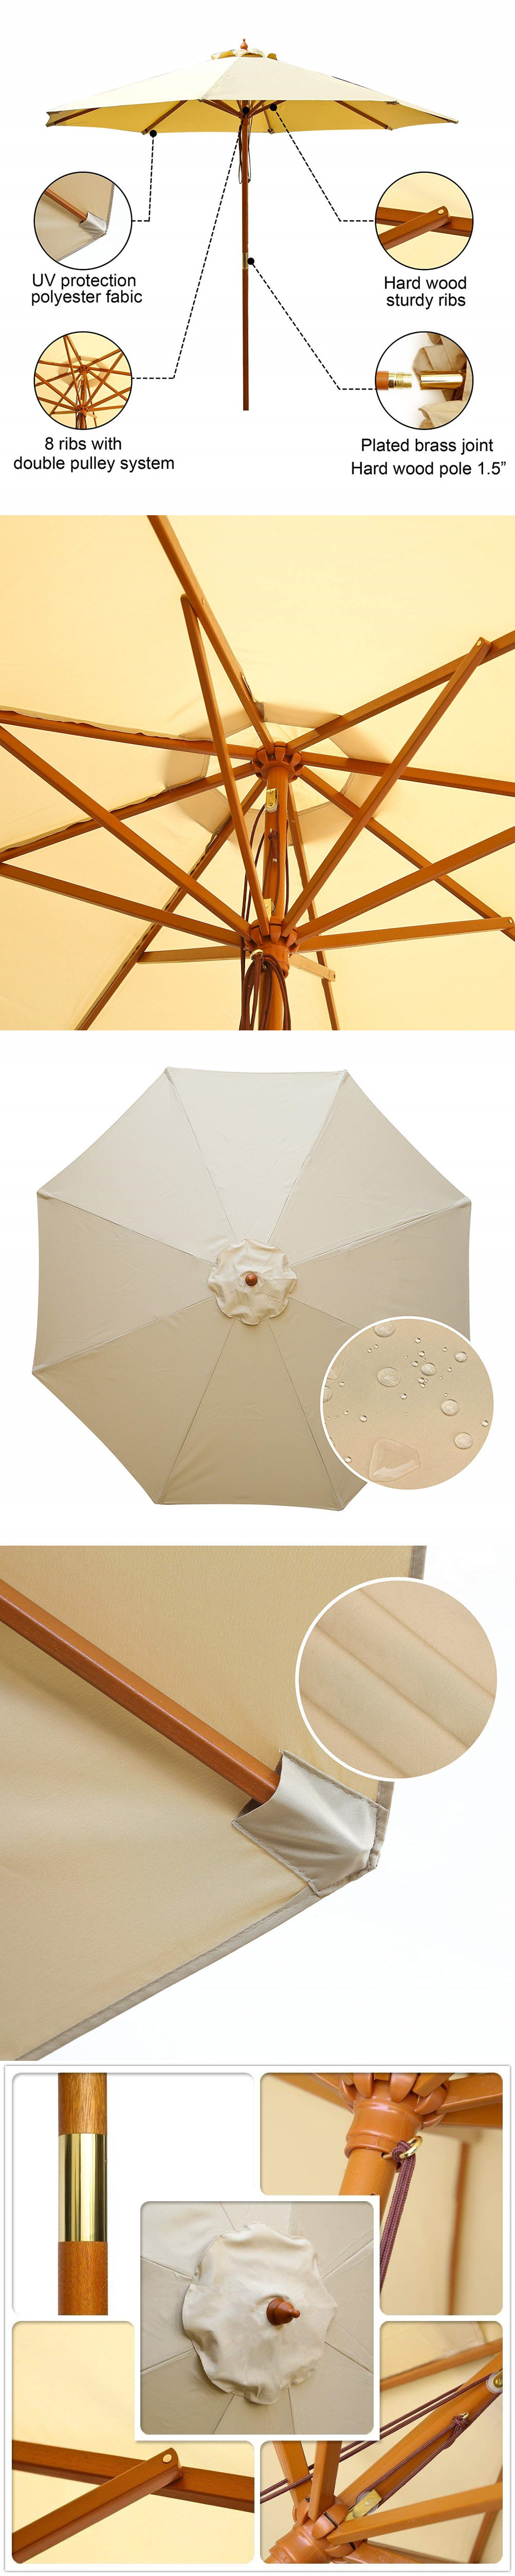 Umbrella-Premium Sunshade Pole Outdoor Beach Cafe Garden Wooden Patio Umbrella